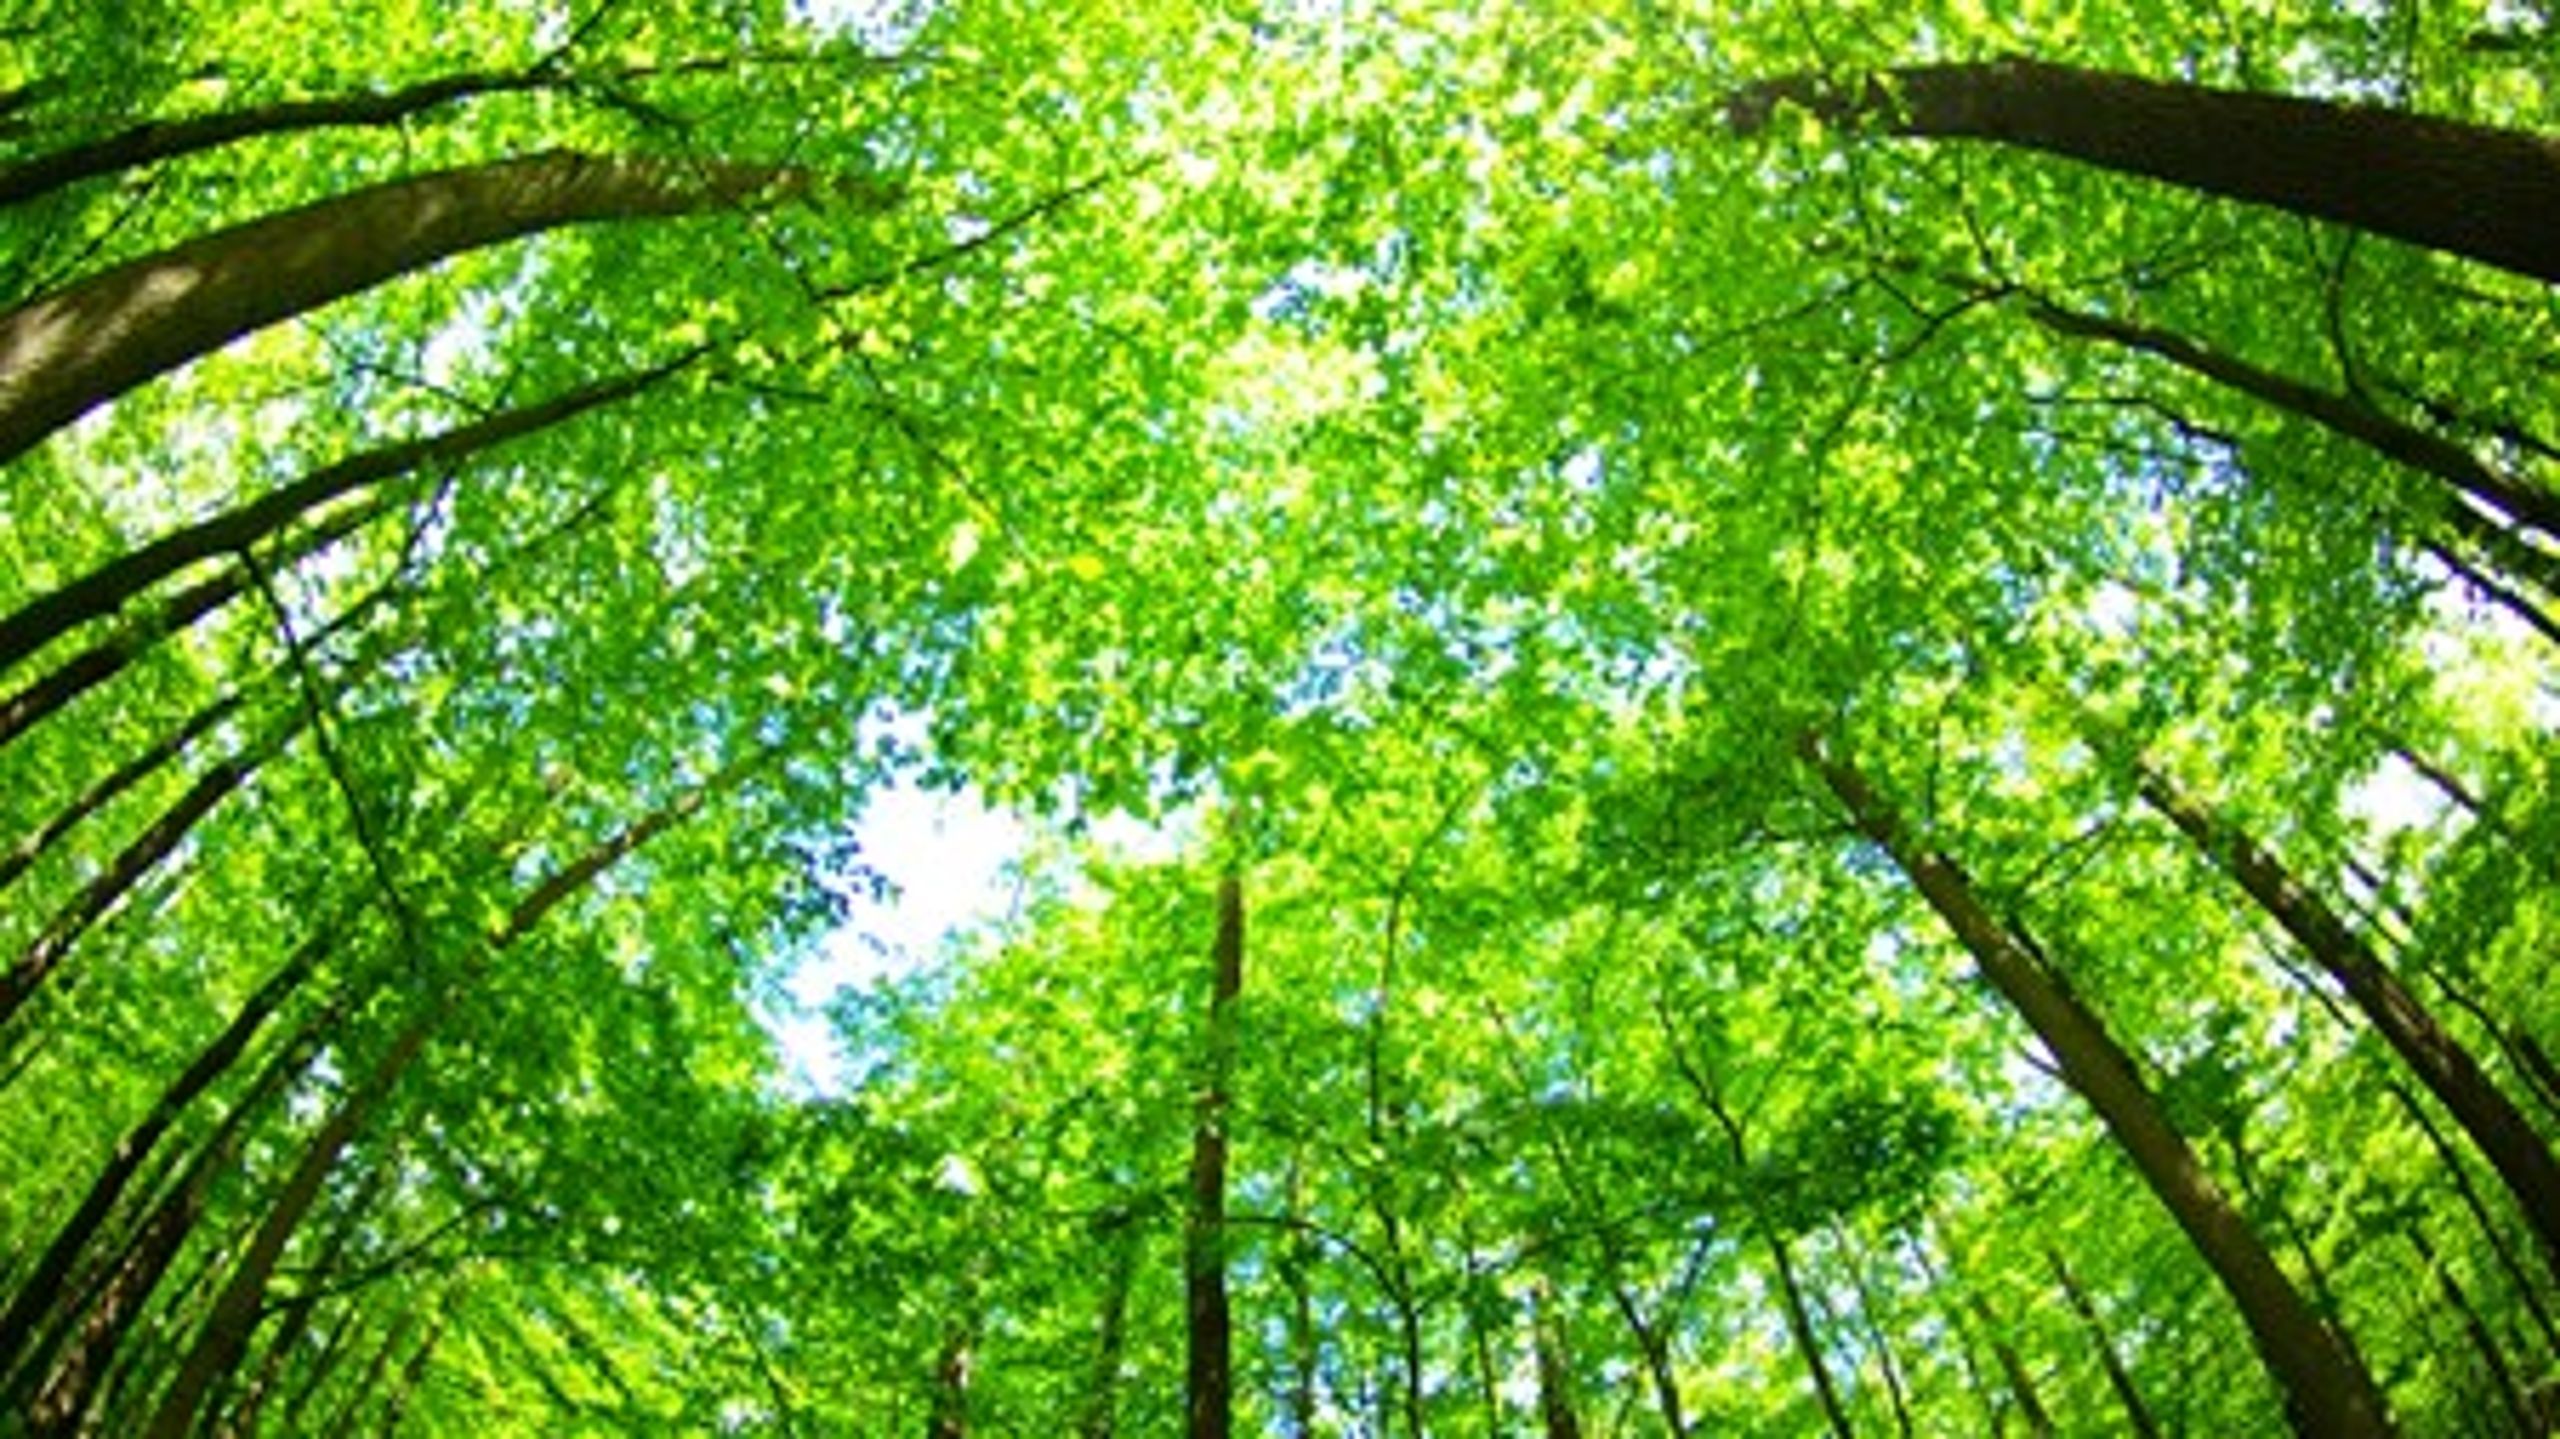 Enhedslisten vil have ny opgørelse over CO2-udslippet fra brugen af biomasse. Det er ikke relevant, for vi har allerede sikret genplantning af træer, lyder det fra energibranchen.